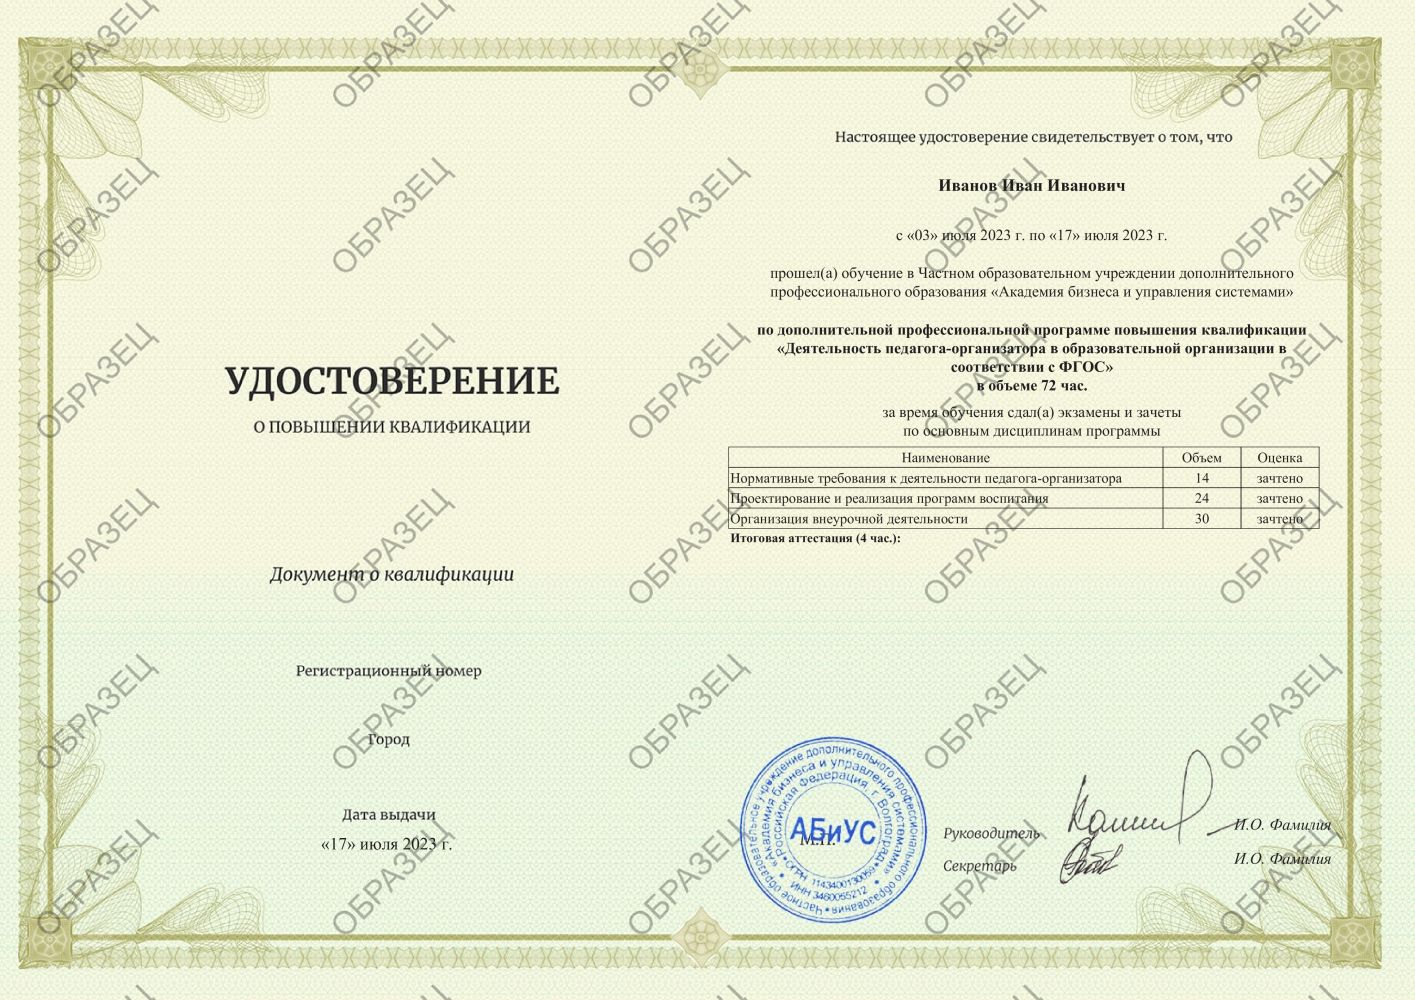 Удостоверение Деятельность педагога-организатора в образовательной организации в соответствии с ФГОС 72 часа 3188 руб.